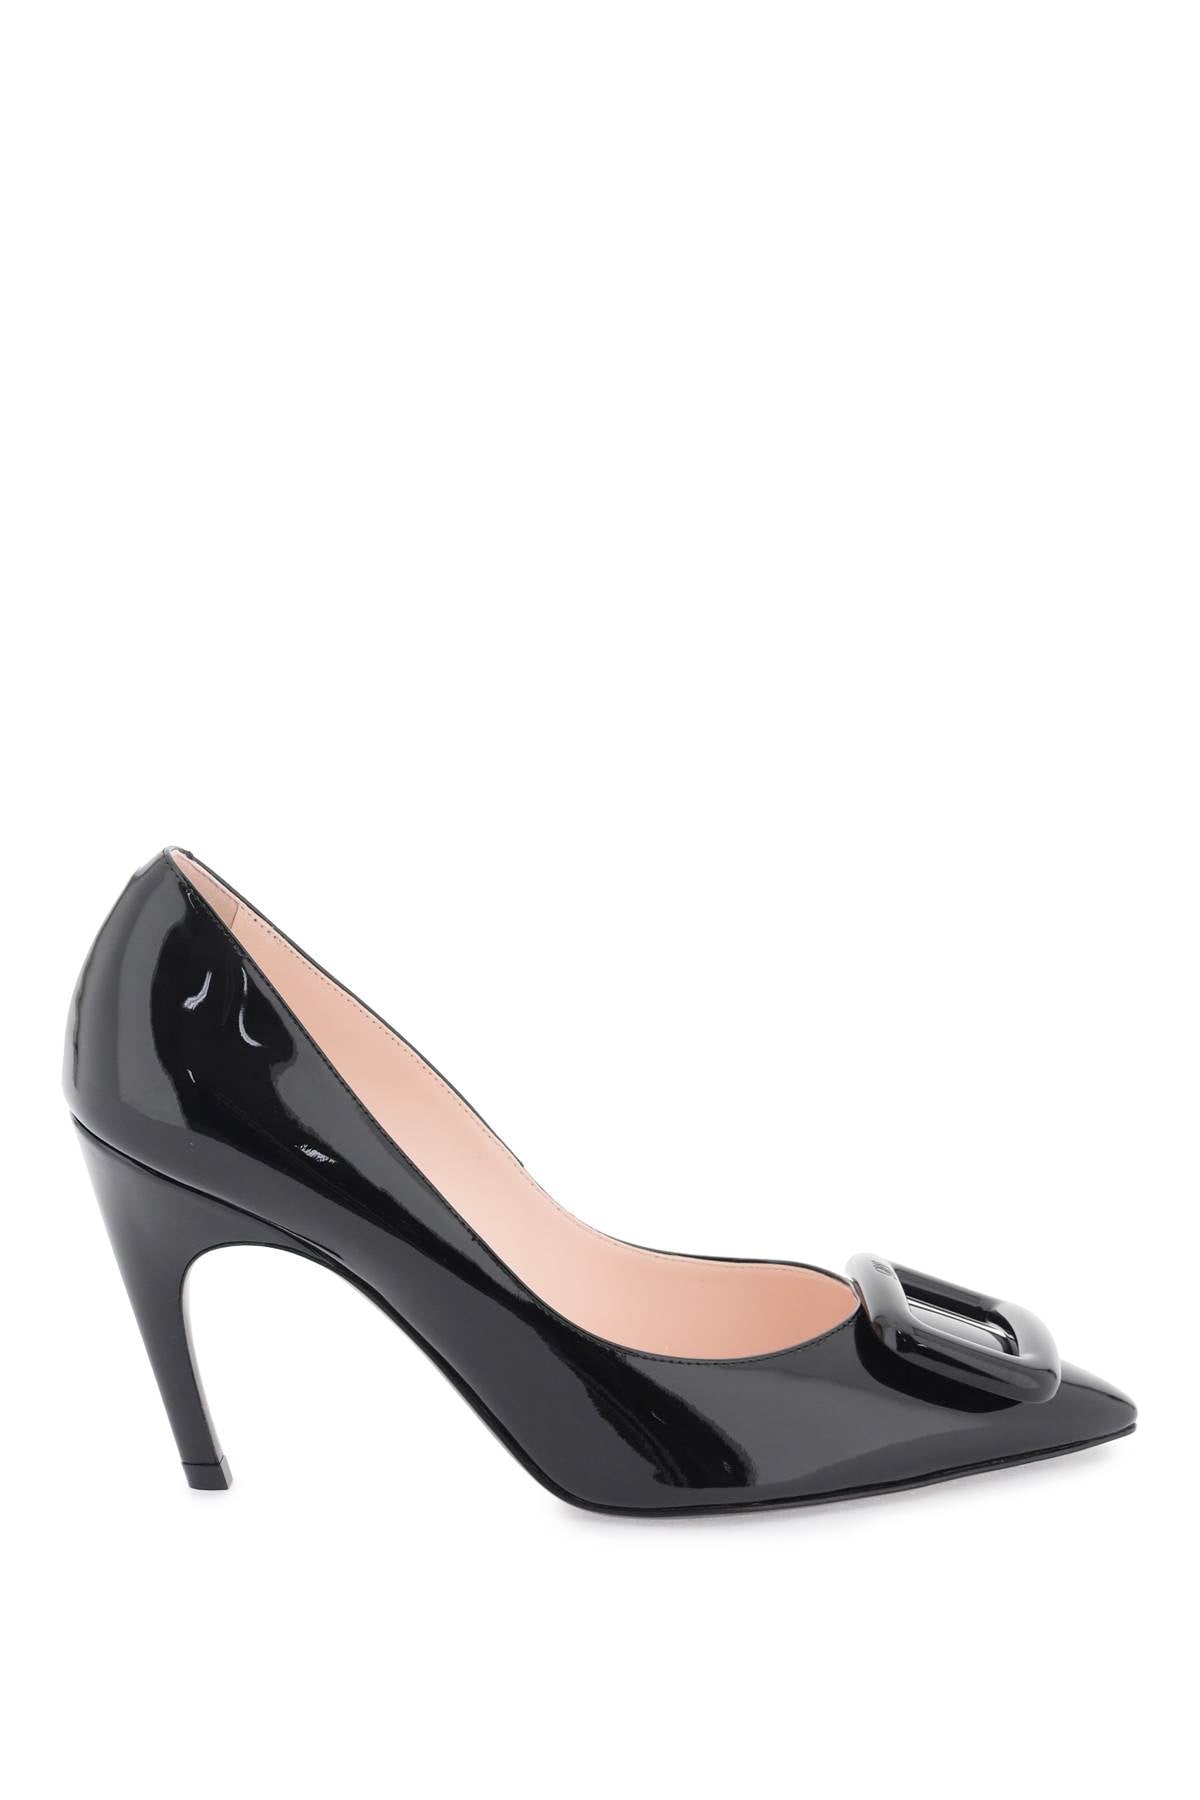 時尚女性最佳選擇 - 光滑黑色專利皮革高跟鞋